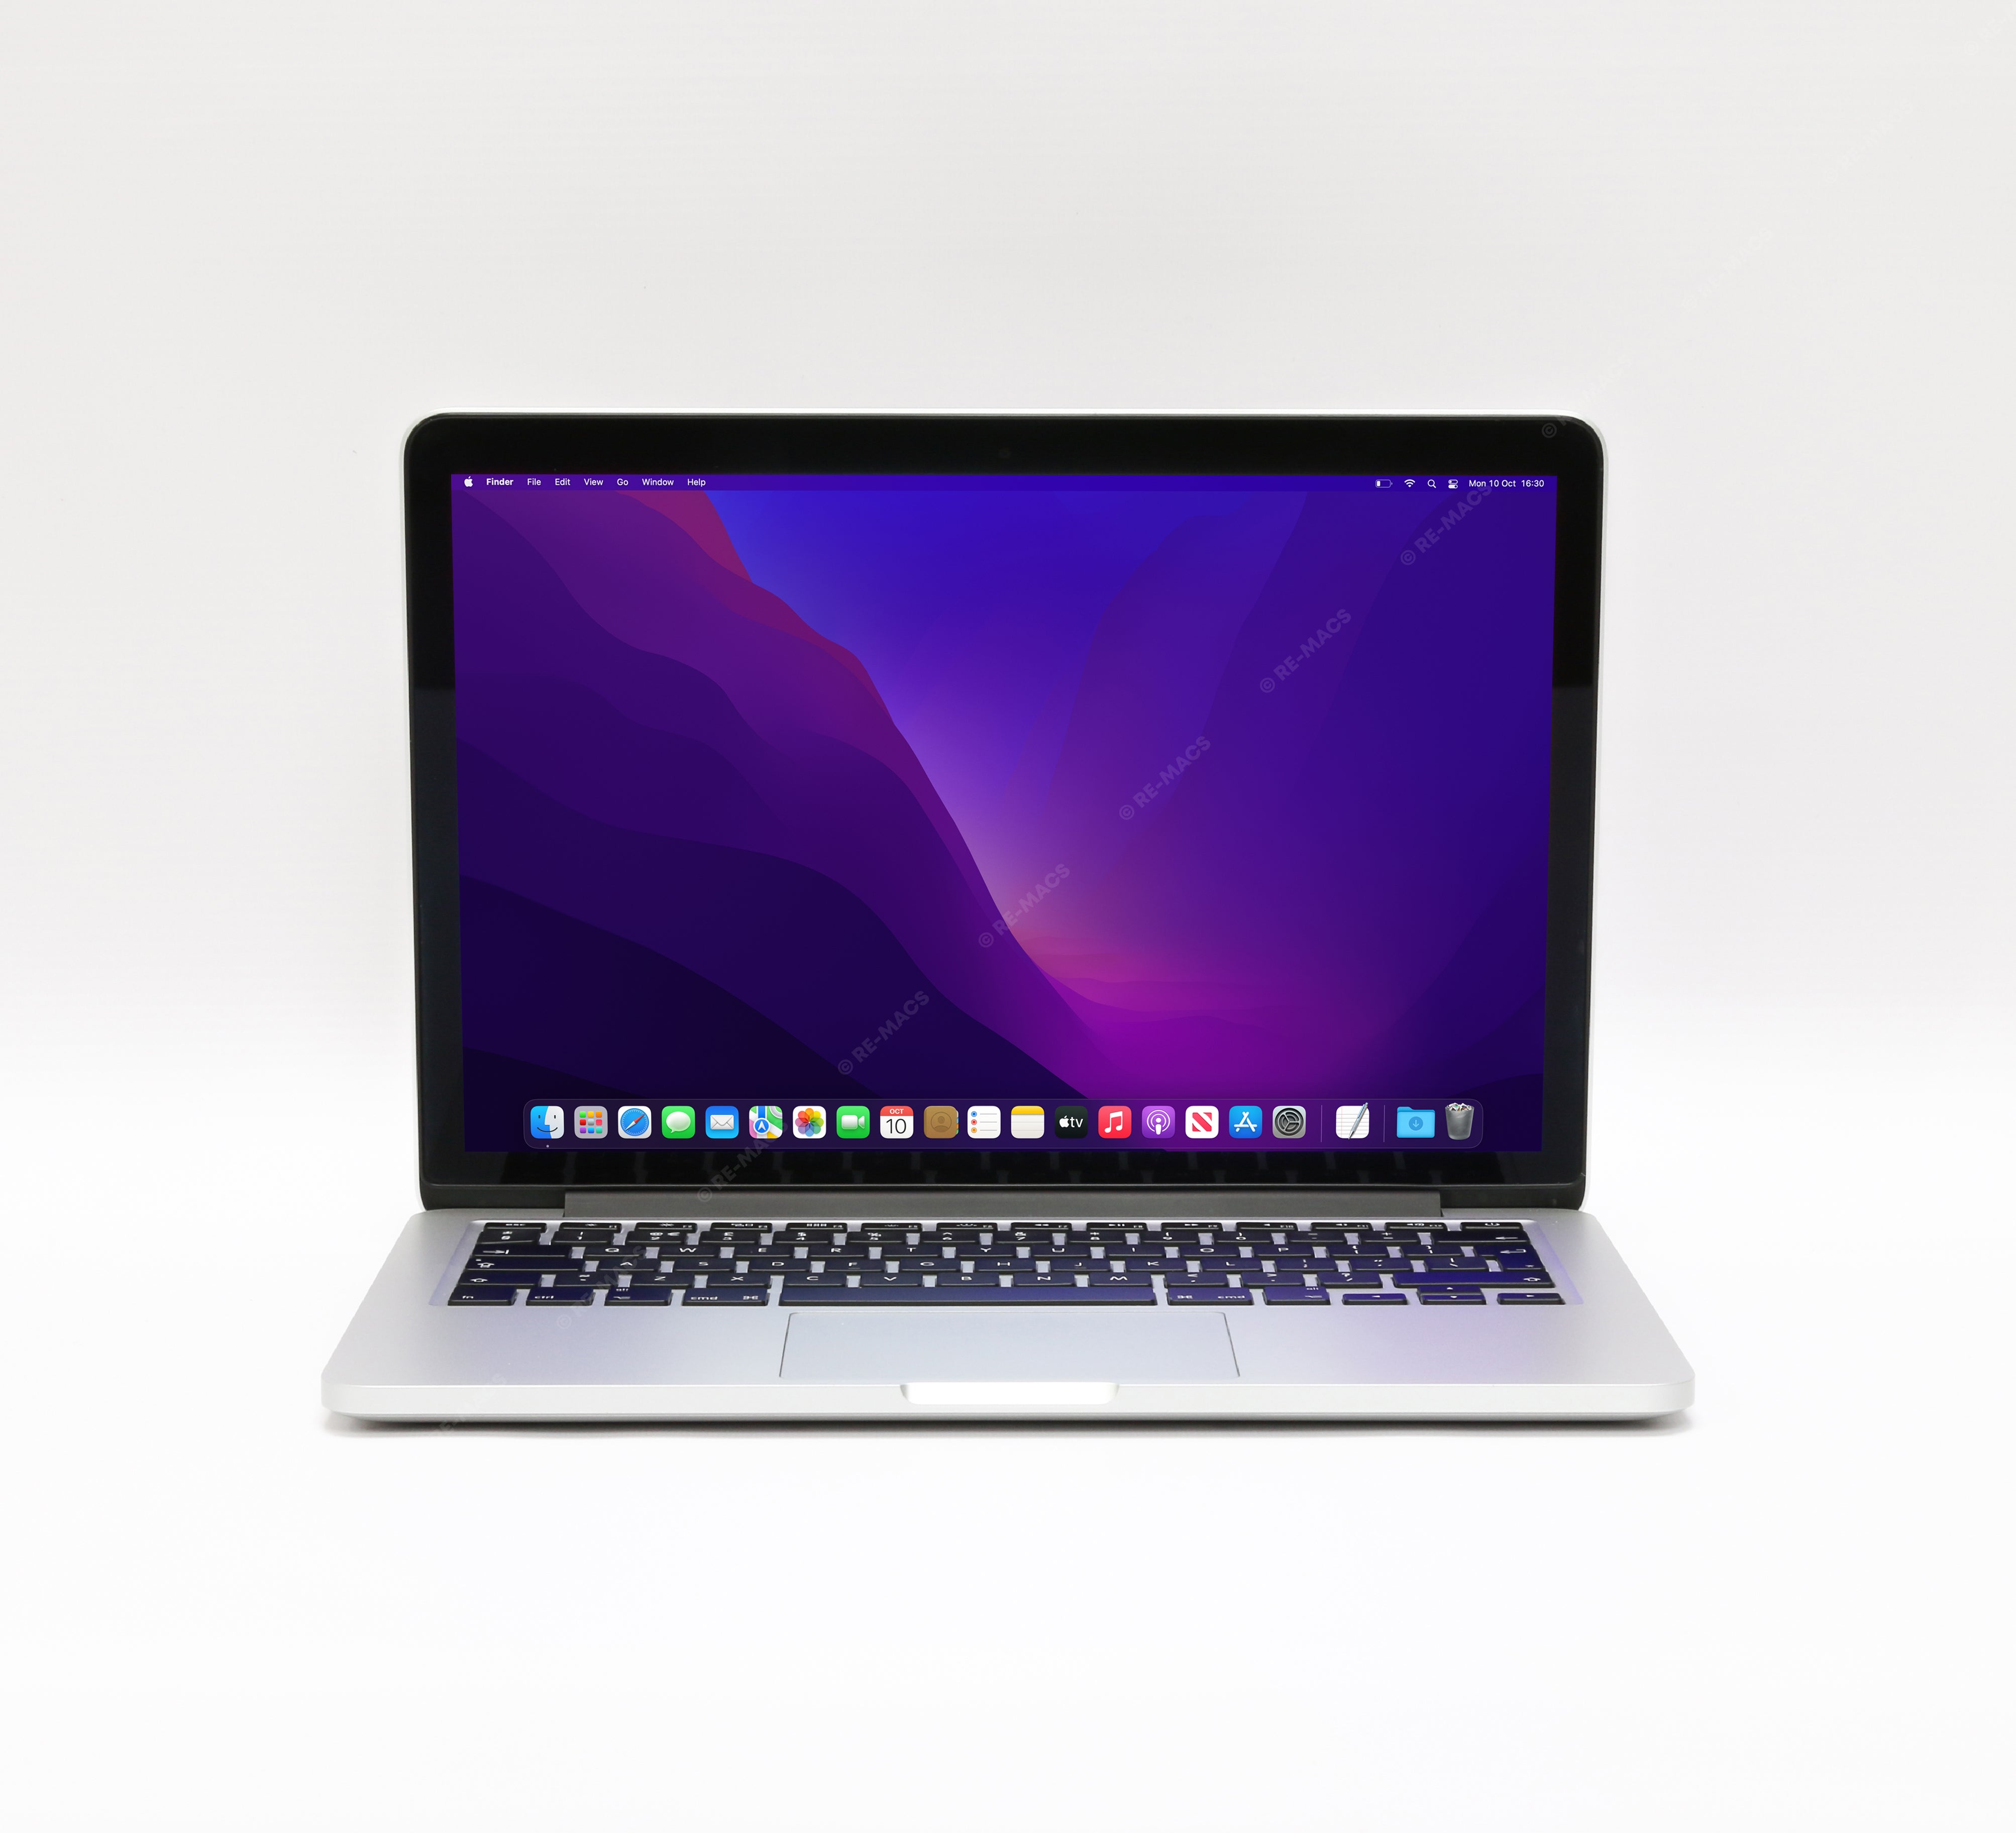 macbook12 超美品 i7 16G 512GB 充電34回保証2021/6